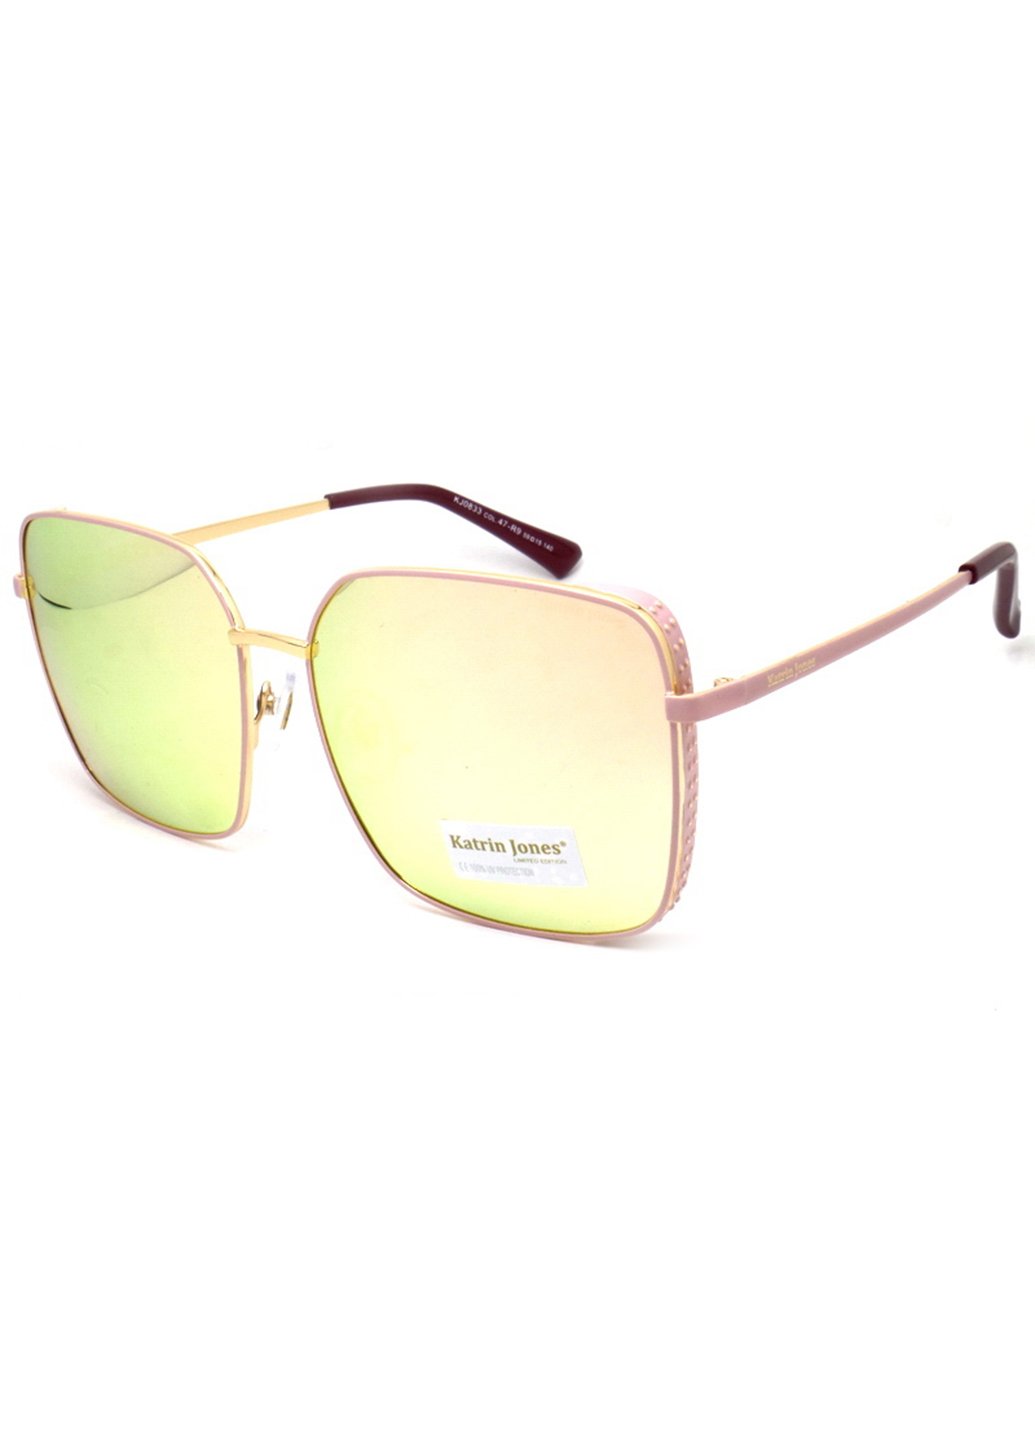 Купить Женские солнцезащитные очки Katrin Jones с поляризацией KJ0833 180028 - Зелёный в интернет-магазине